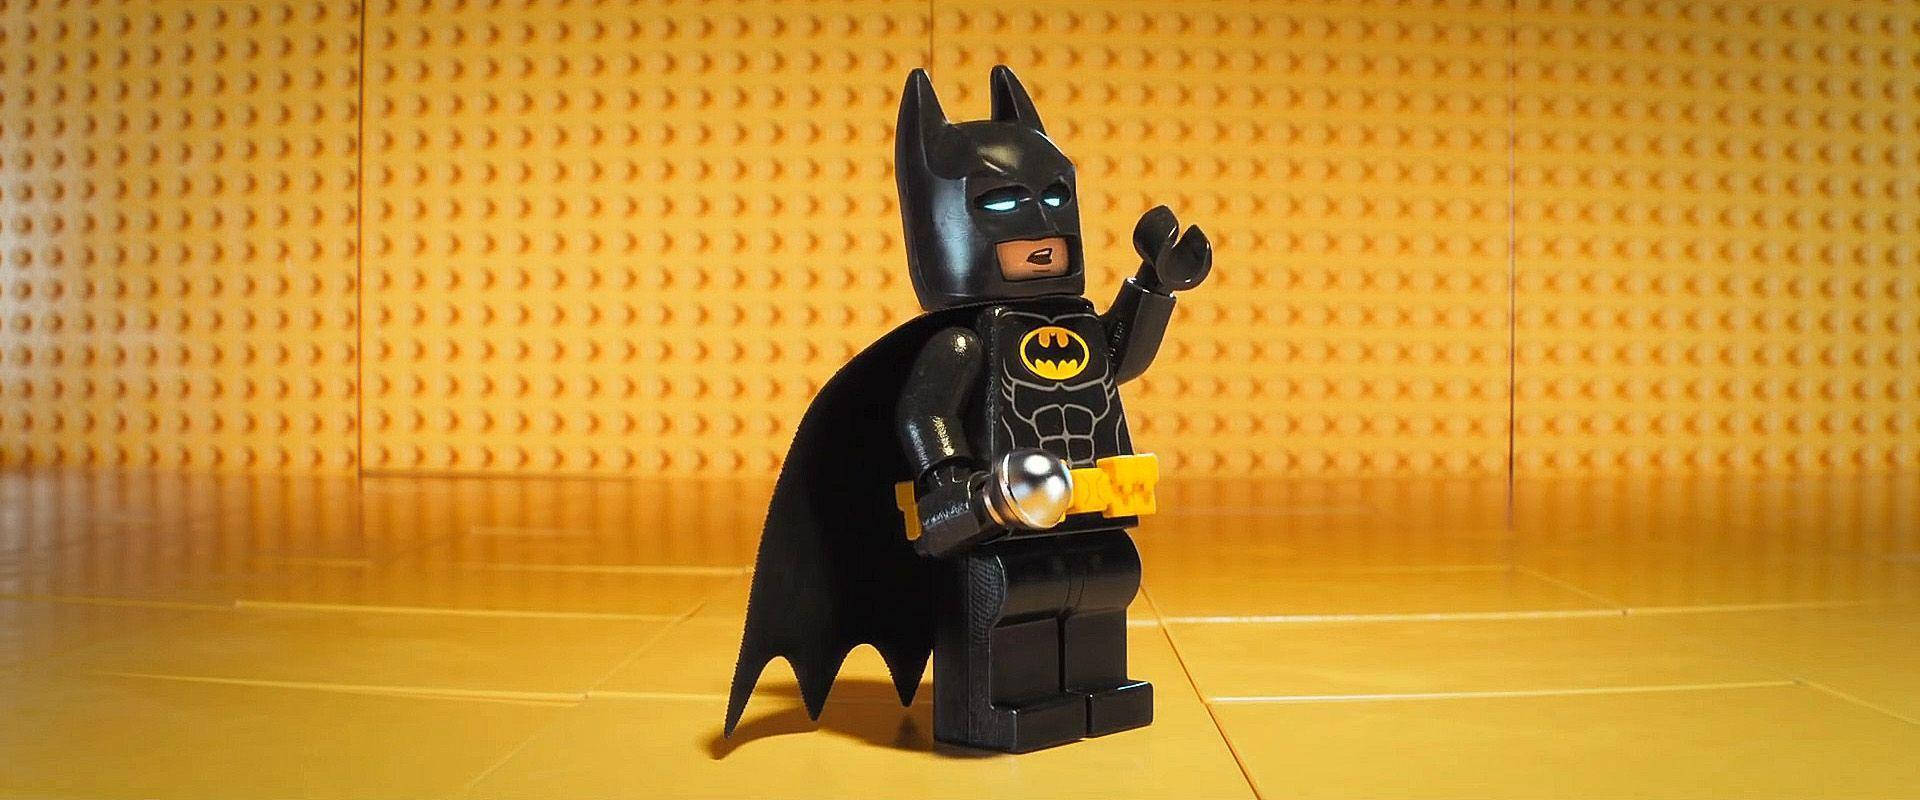 Batmanaus Dem Lego Batman Film Seitenansicht. Wallpaper